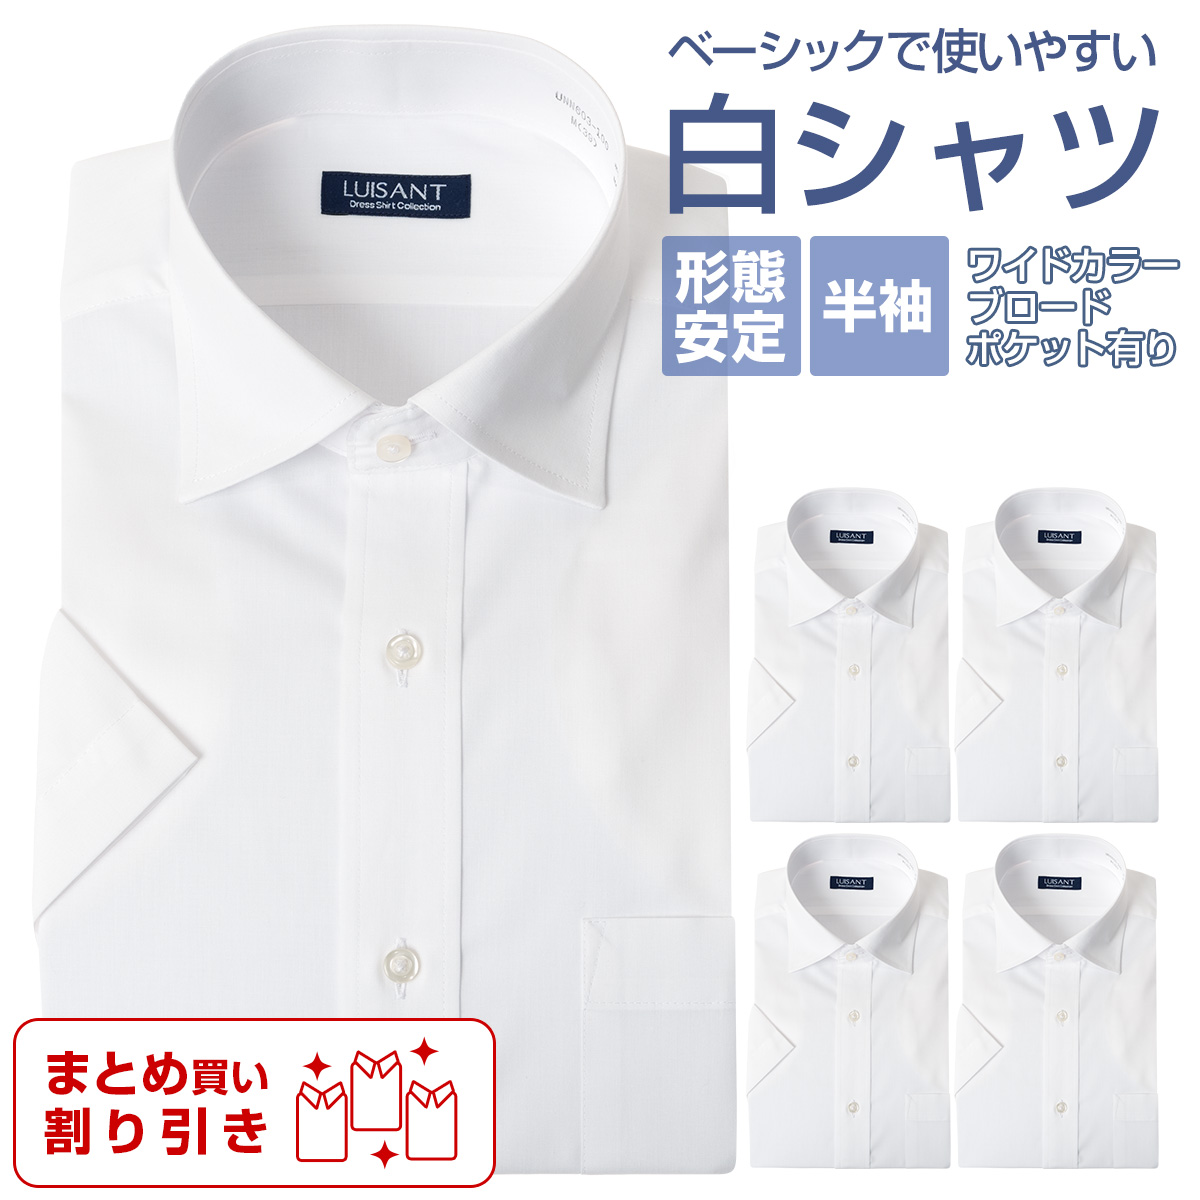 白ワイシャツ 半袖  形態安定 標準体 ワイシャツ 送料込み まとめ買い割引 ［3枚以上1666円/枚 5枚以上1299円/枚 単品購入OK］